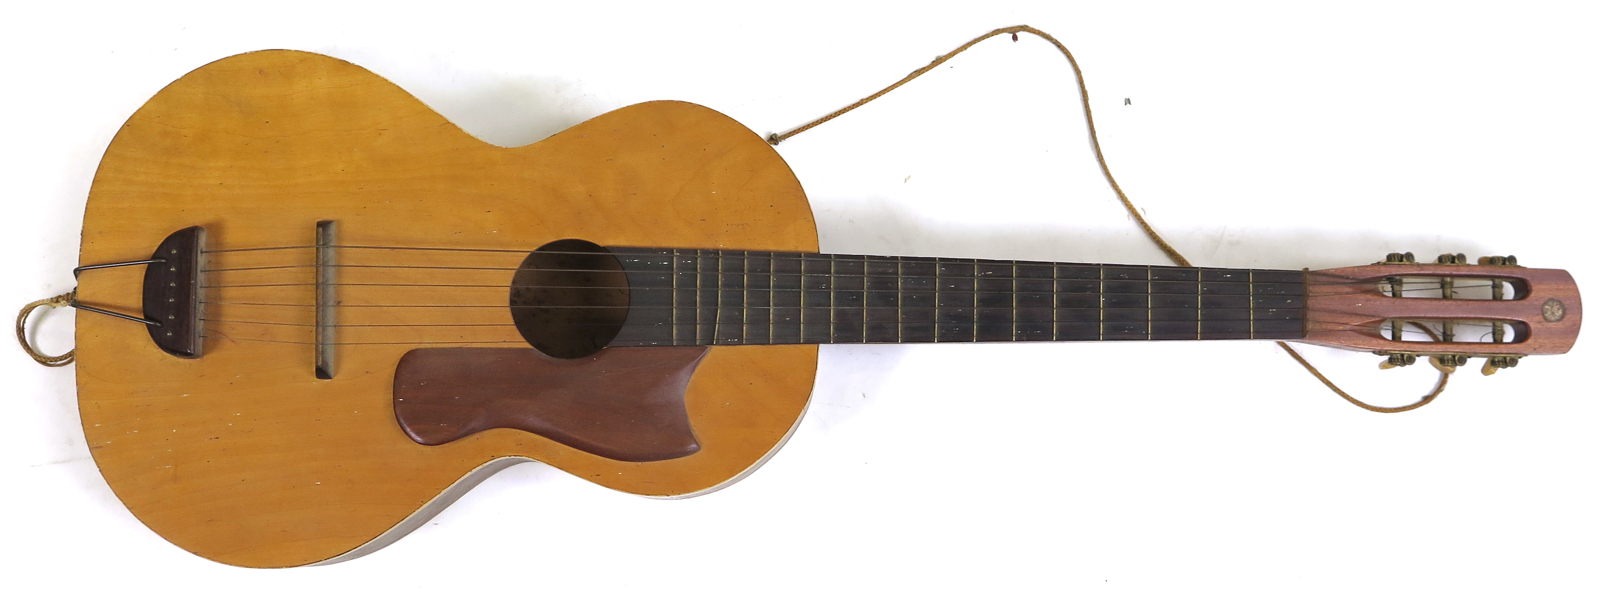 Akustisk gitarr, 1900-talets mitt, otydligt märkt (Holland?)_28060a_8db4743abb2979e_lg.jpeg